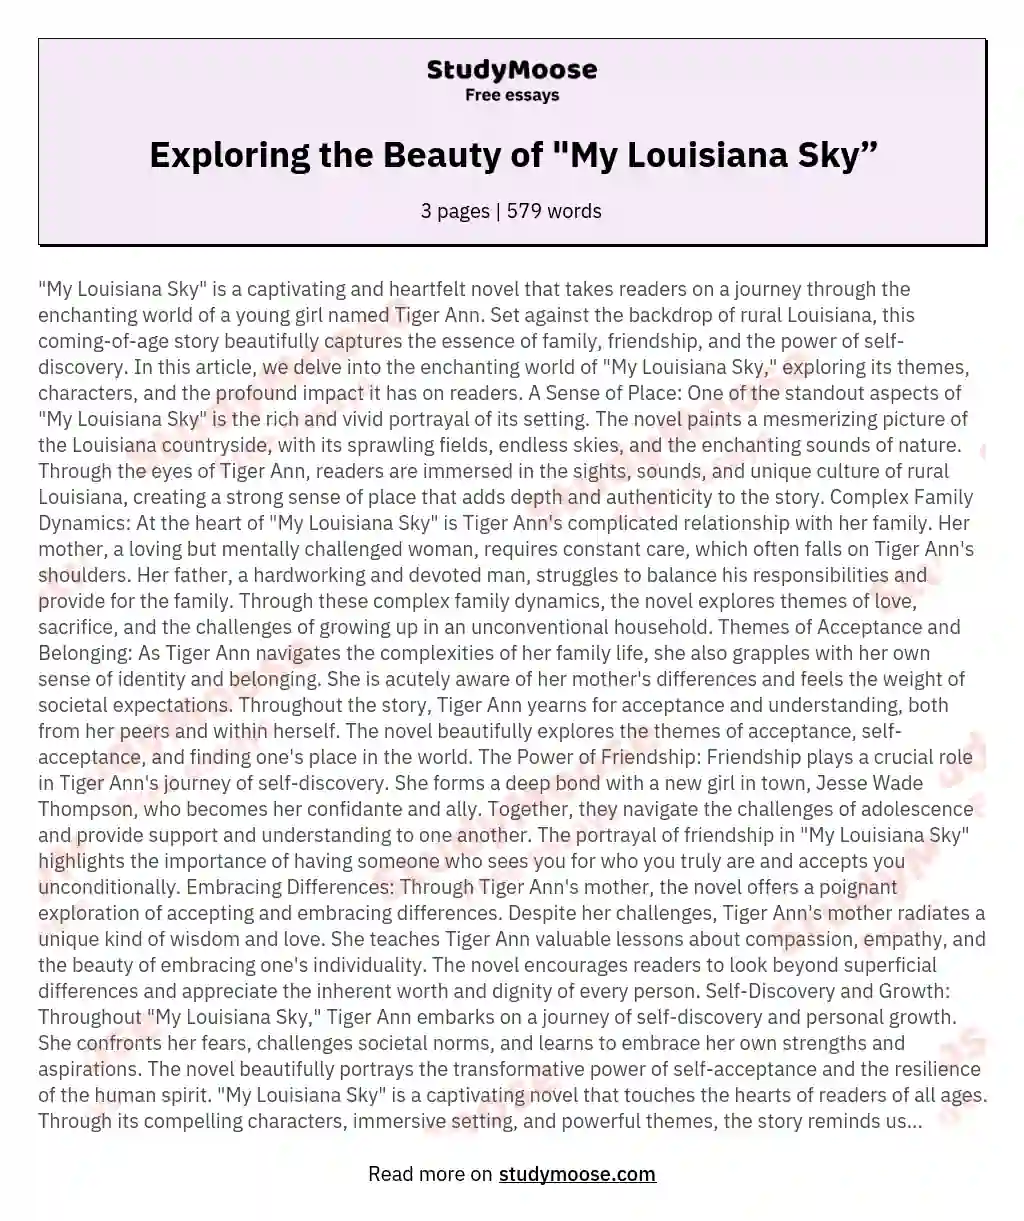 Exploring the Beauty of "My Louisiana Sky” essay